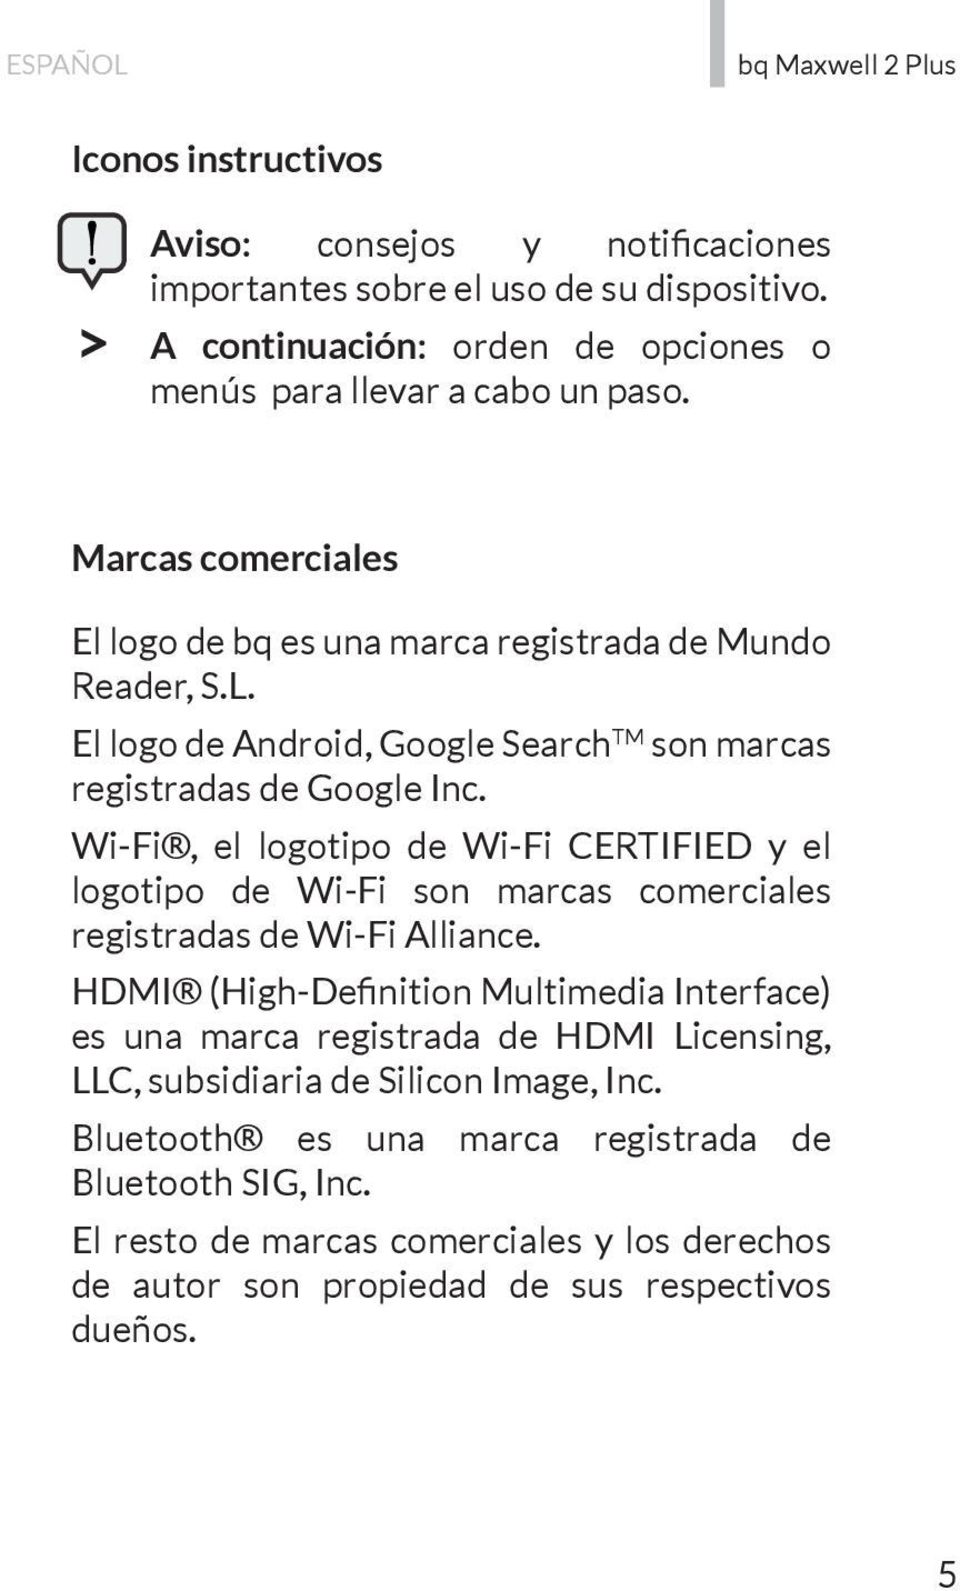 Wi-Fi, el logotipo de Wi-Fi CERTIFIED y el logotipo de Wi-Fi son marcas comerciales registradas de Wi-Fi Alliance.